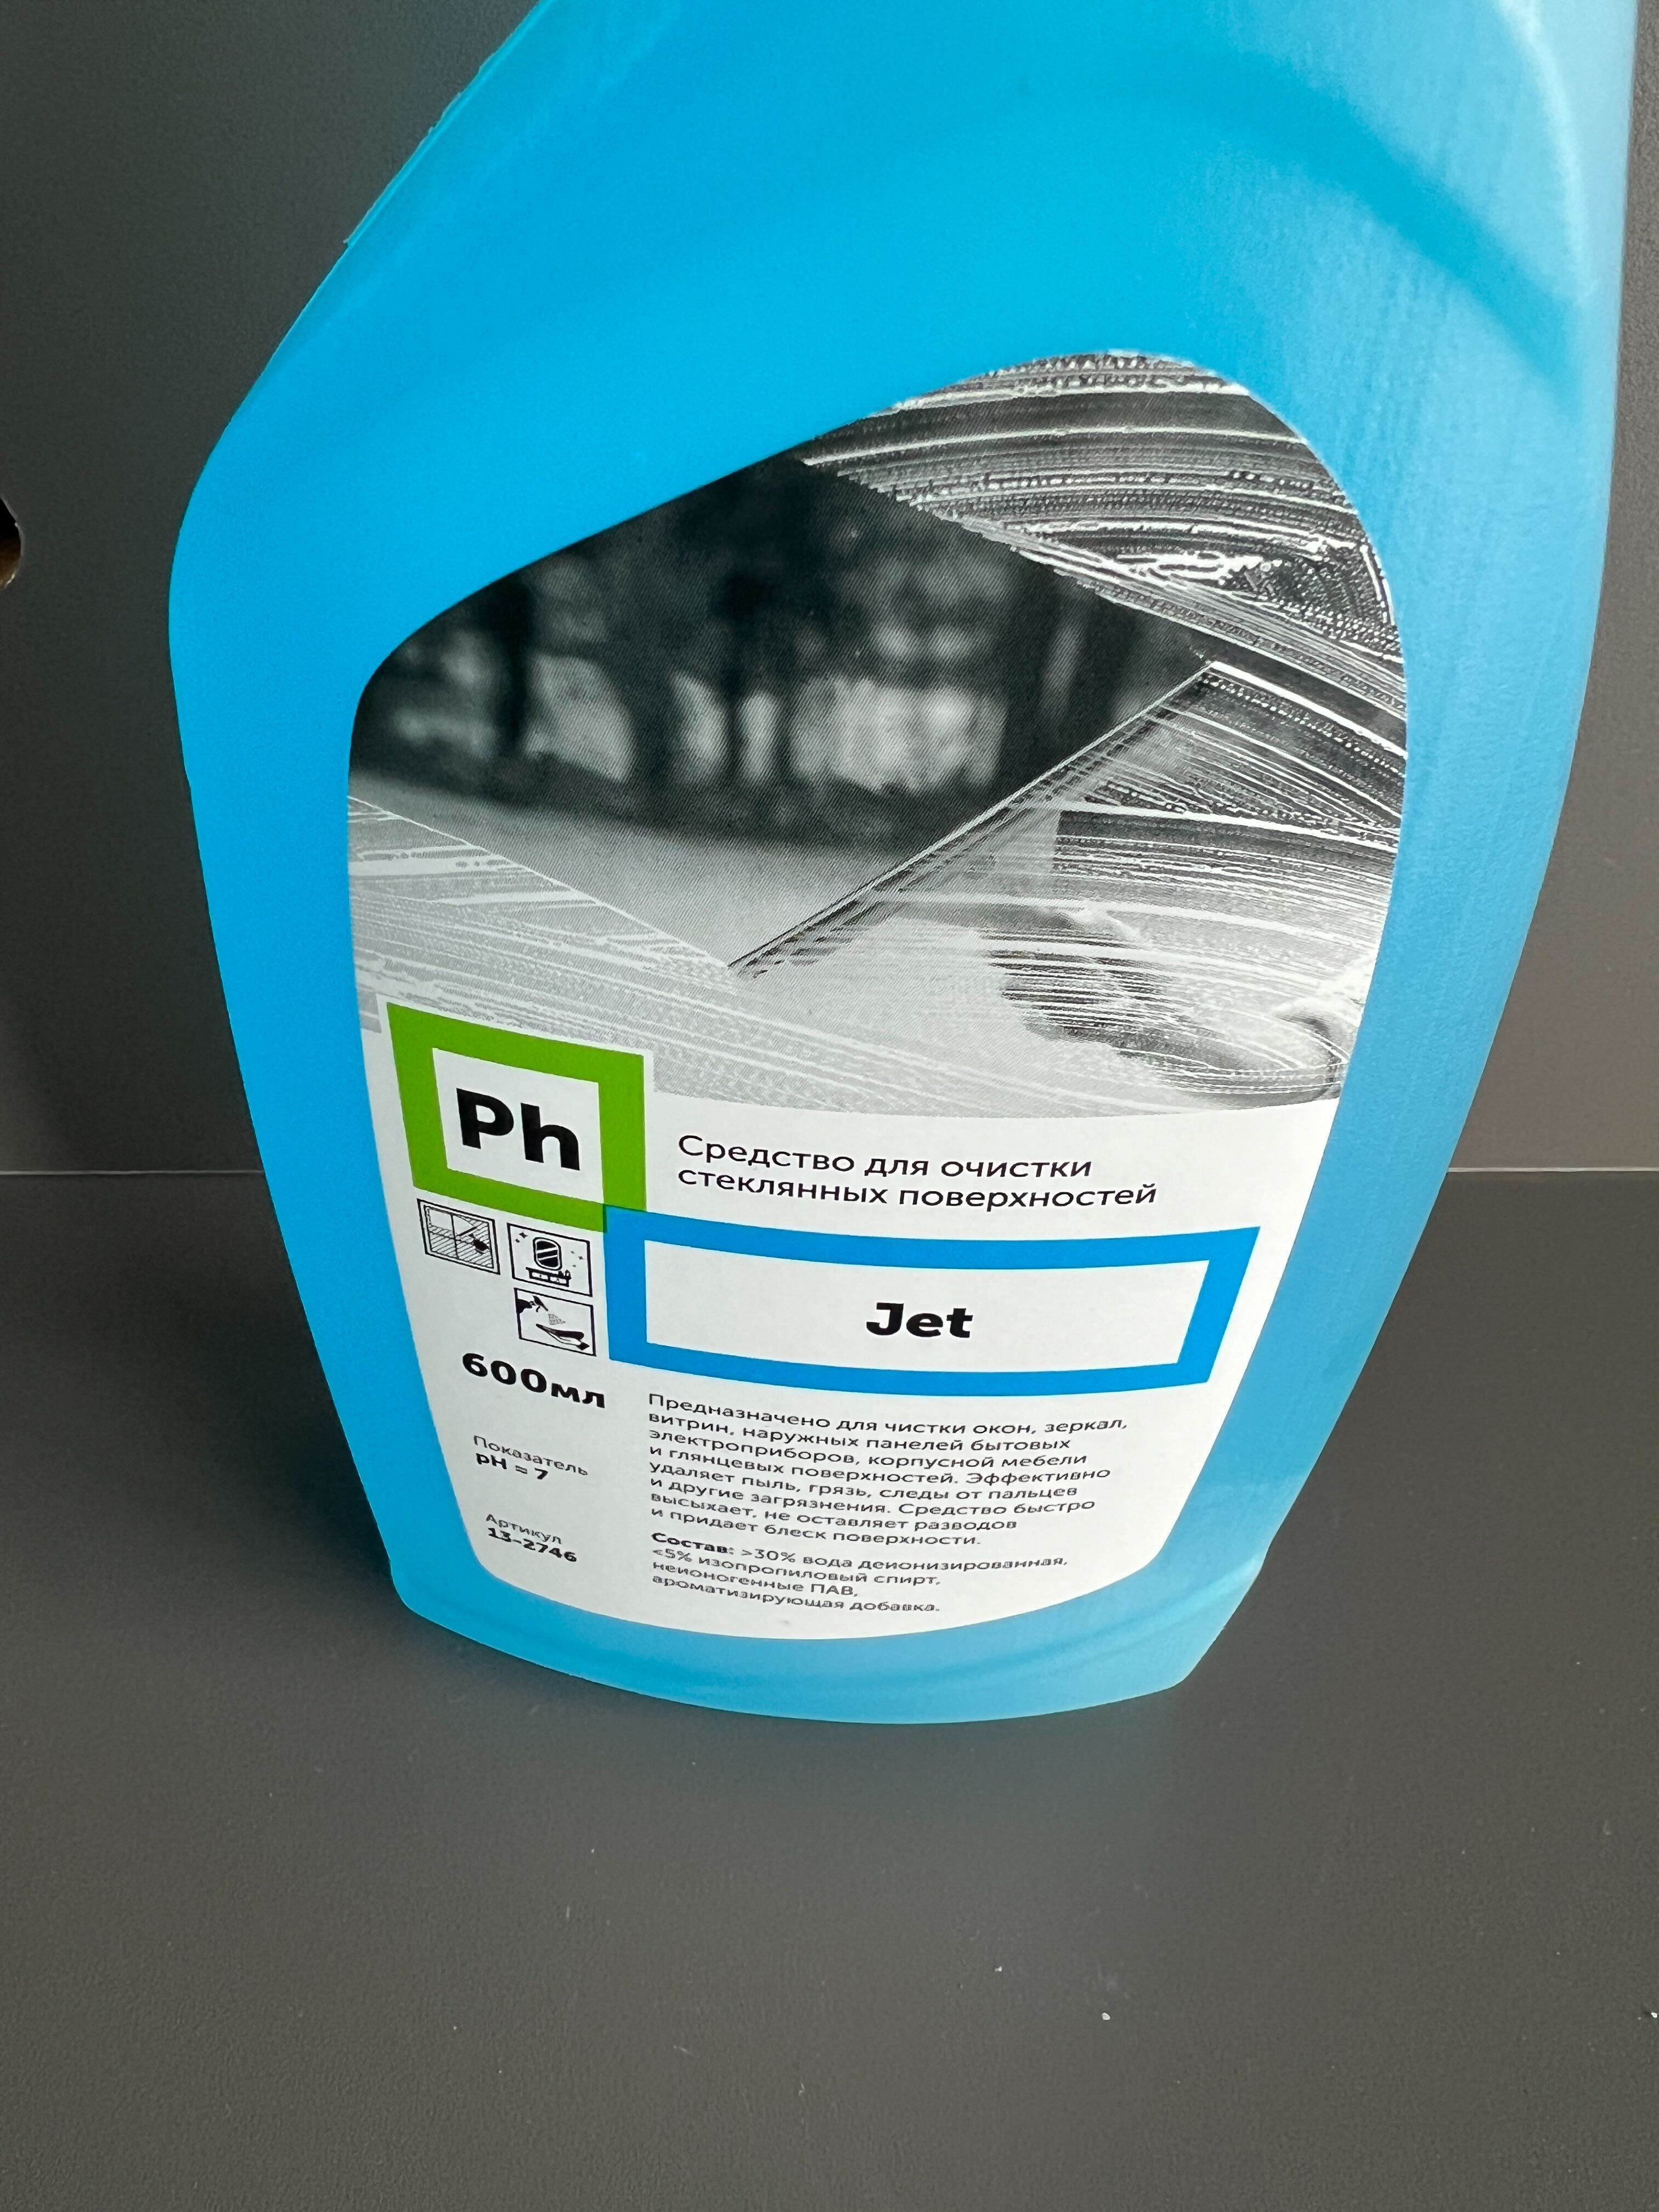 Ph Jet Средство для очистки стеклянных поверхностей, 600 мл, 12 штук